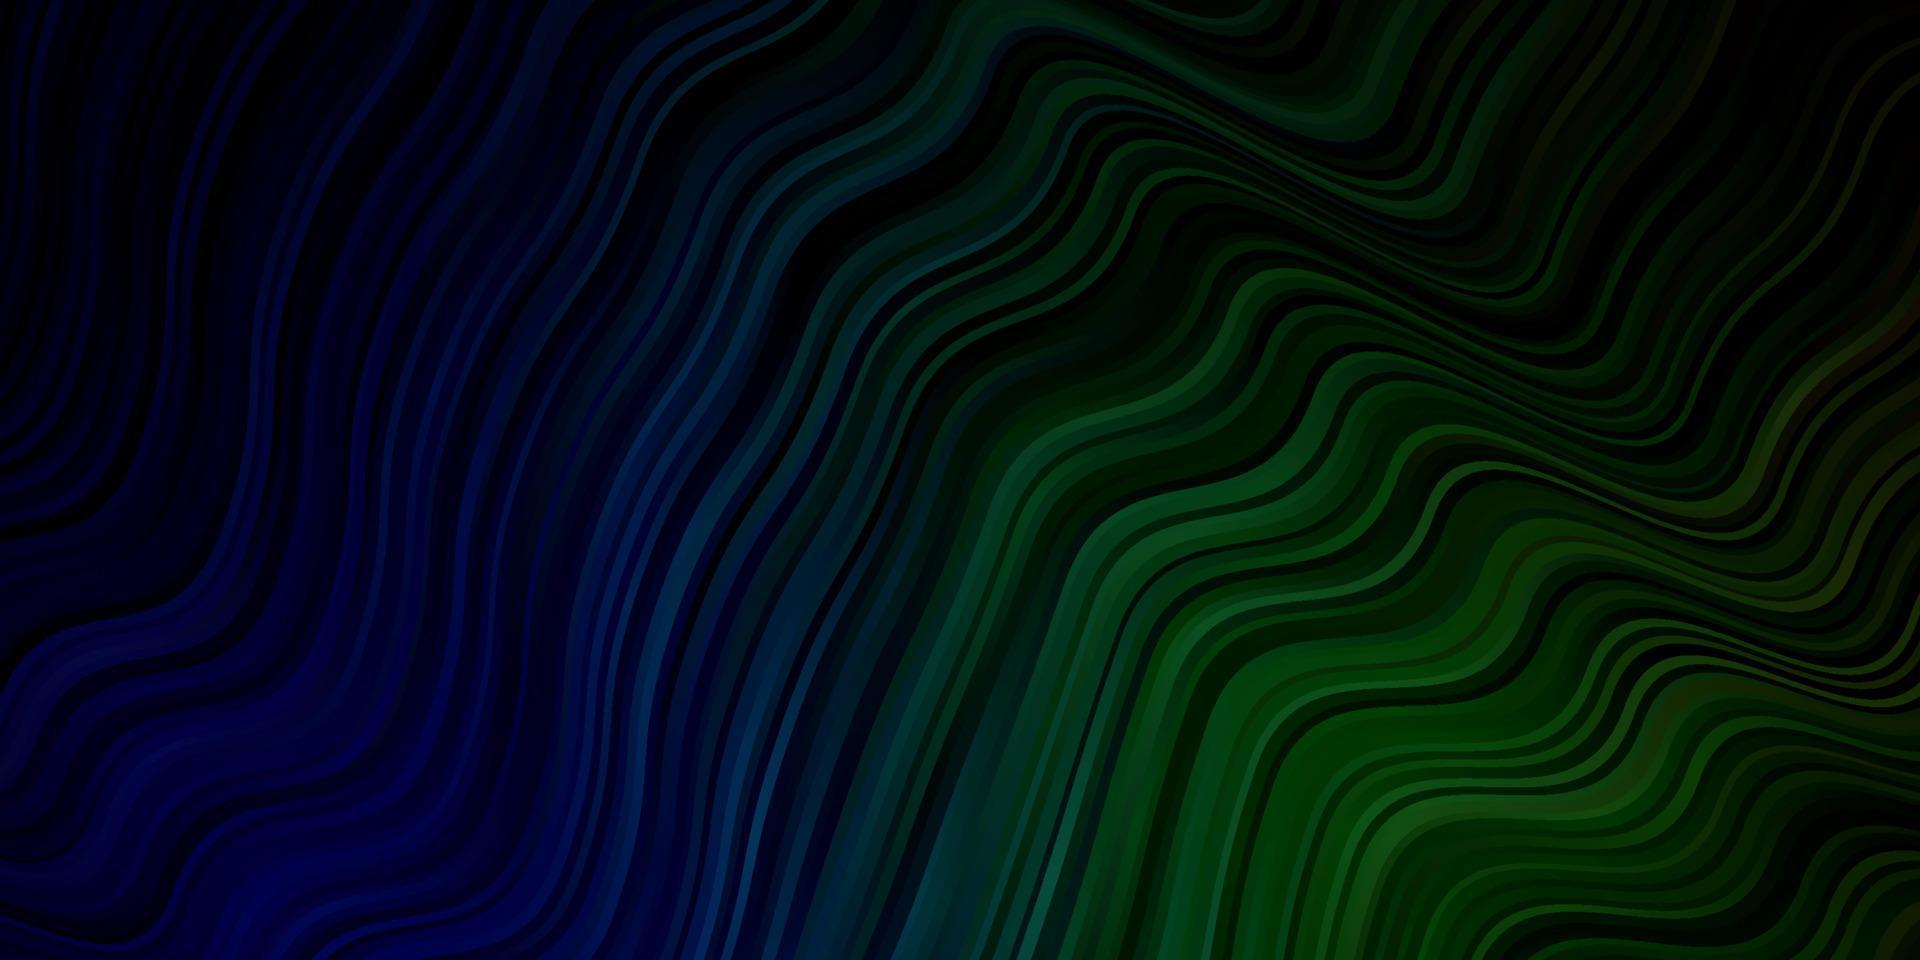 ljusblått, grönt vektormönster med böjda linjer. vektor